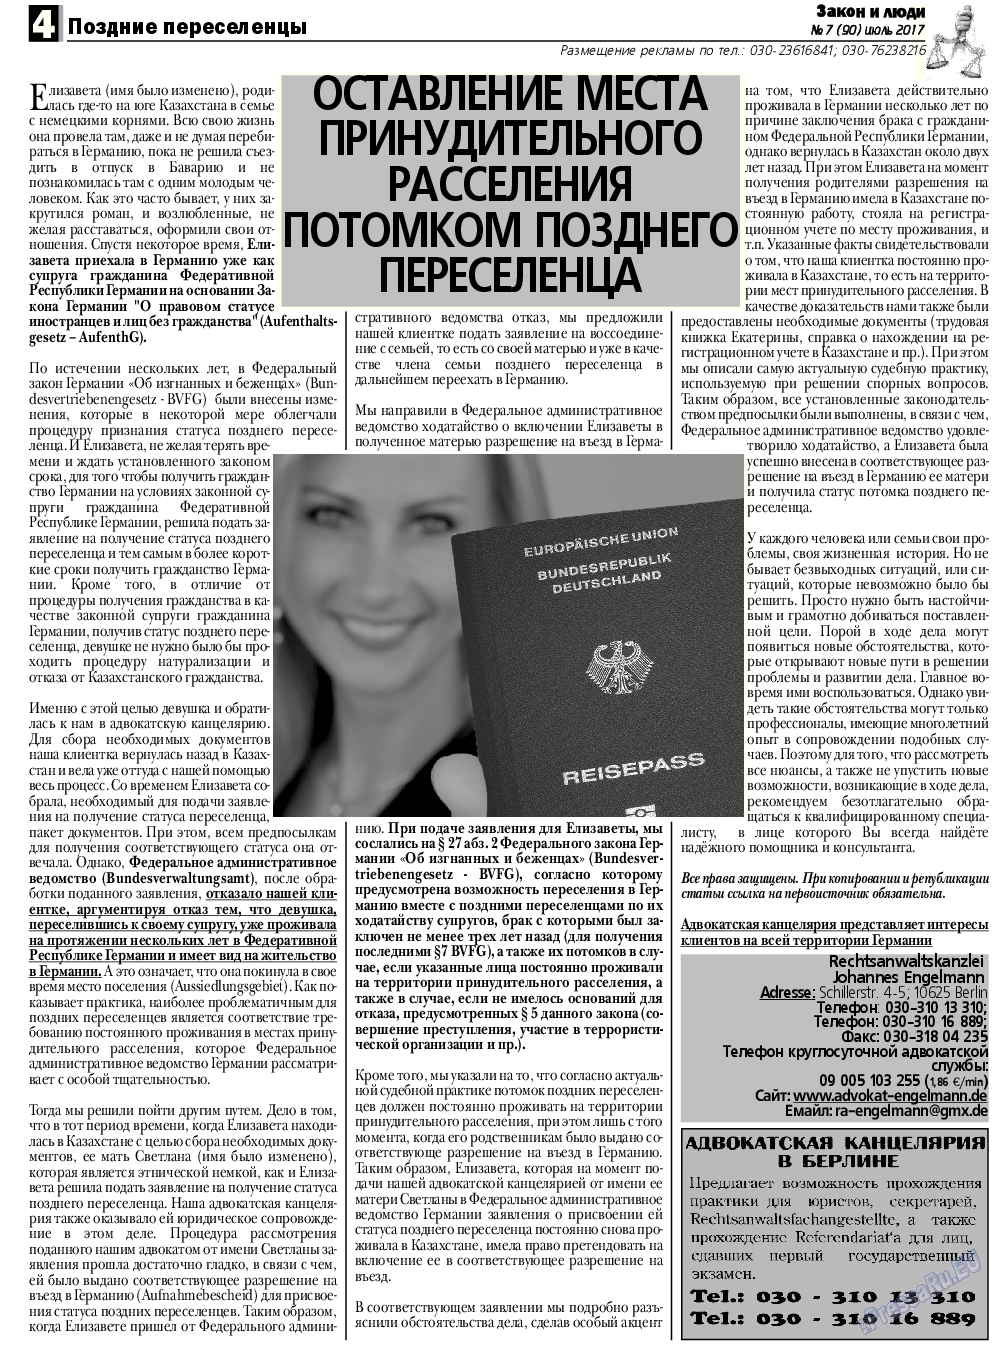 Закон и люди, газета. 2017 №7 стр.4